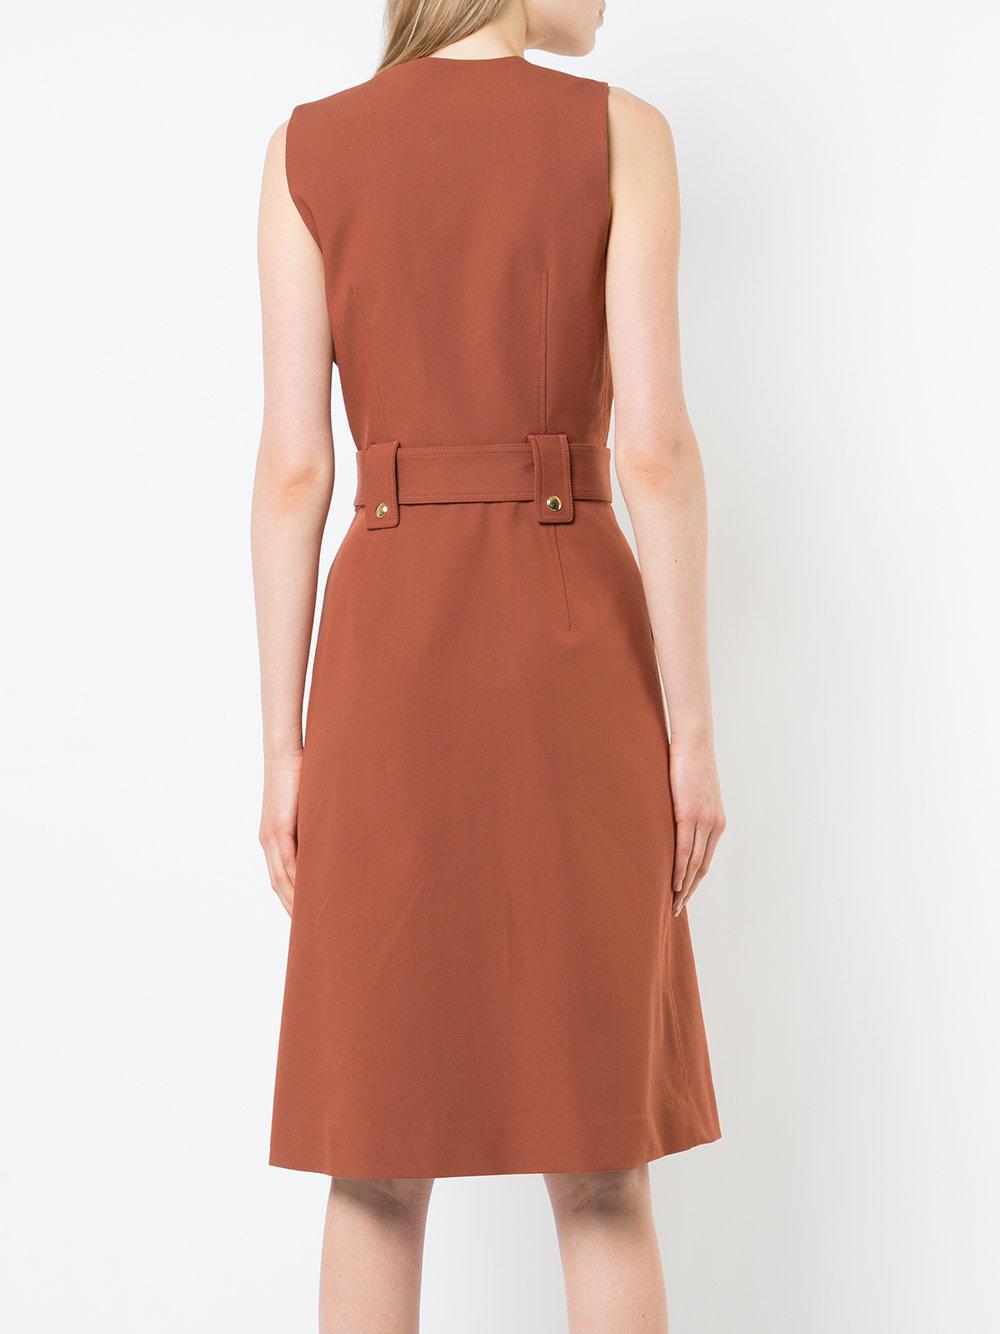 Diane von Furstenberg Cotton Zip Front Belted Dress in Brown - Lyst